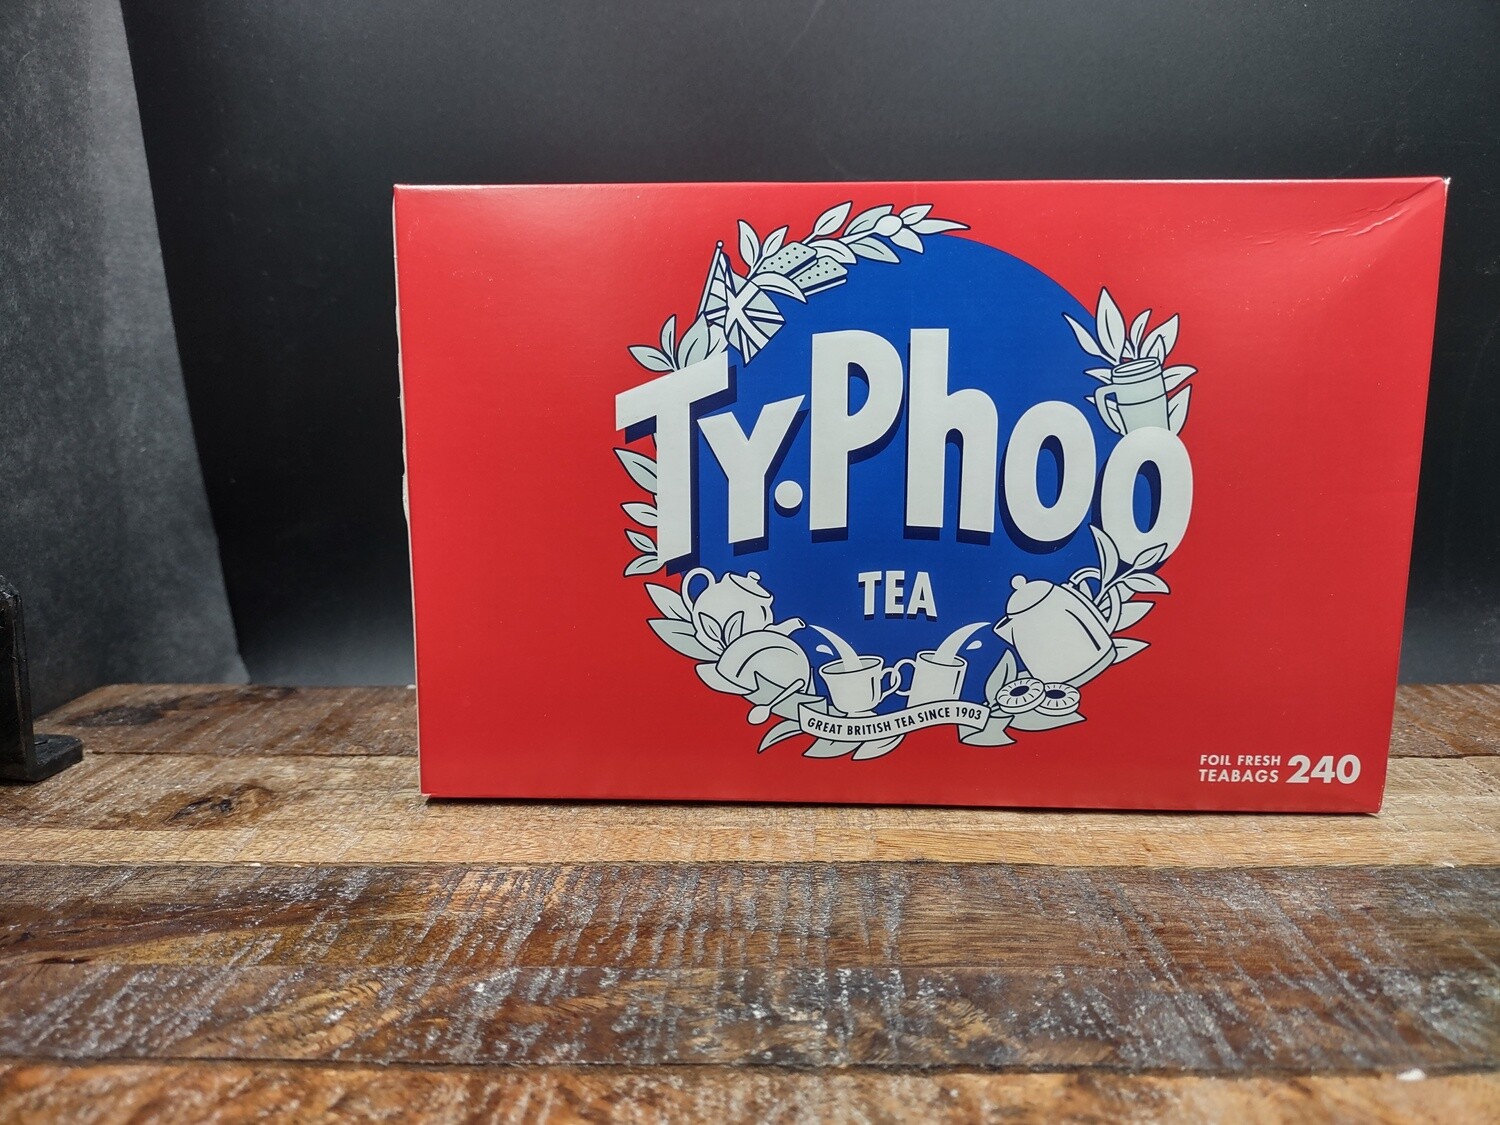 Typhoo Tea 240's